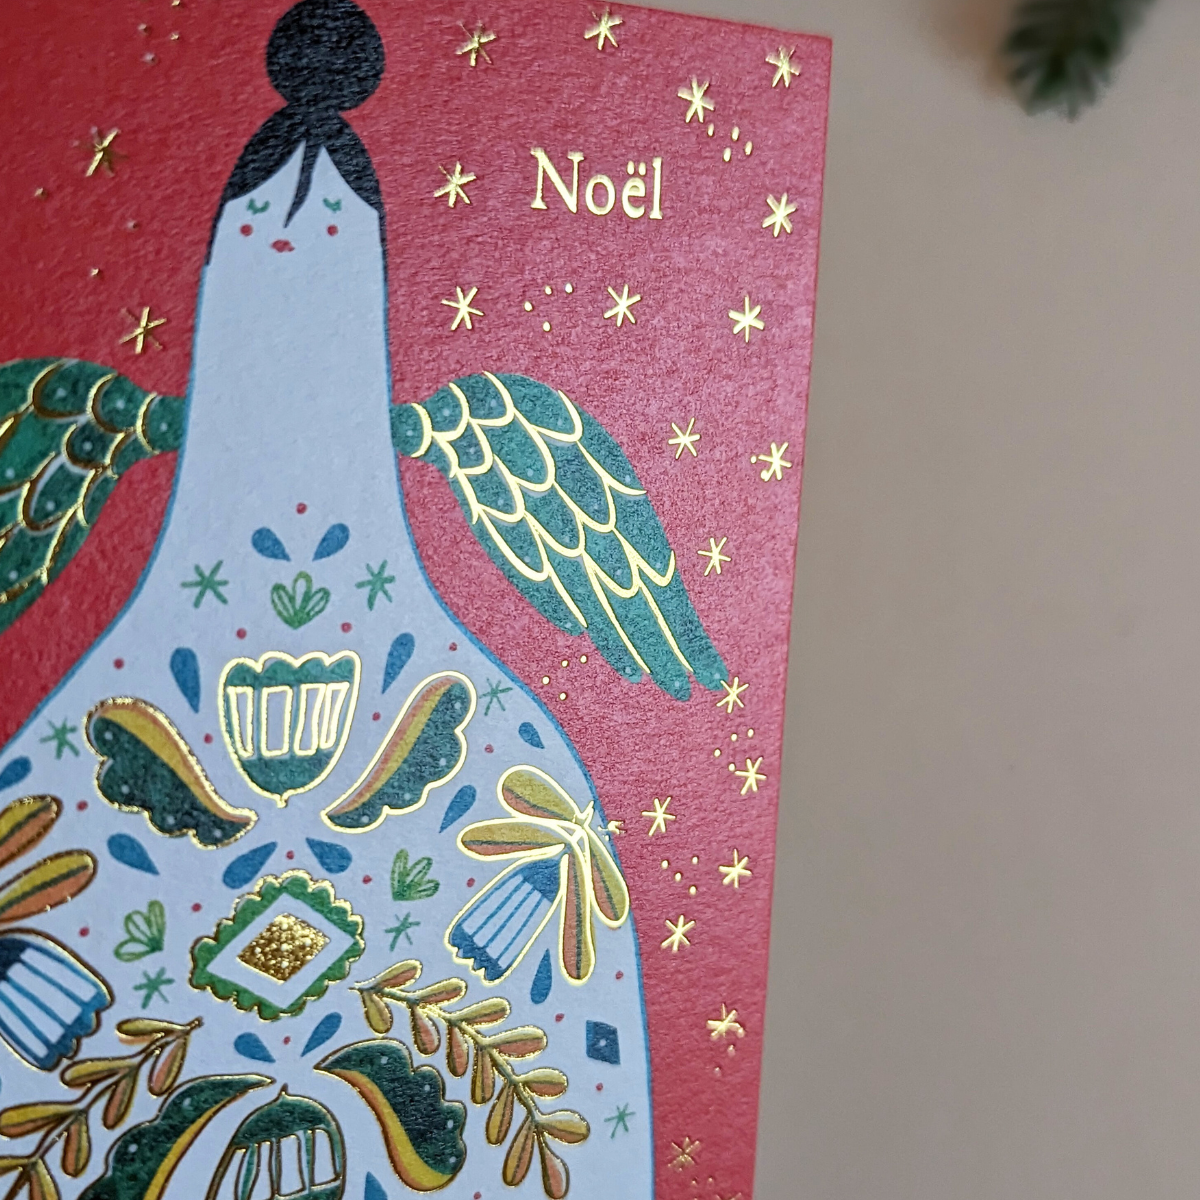 Carte de Noël Halfpenny Postage. On peut voir un ange avec de la dorure sur ses ailes et sur les éléments qui ornent sa robe. L’inscription " Noël " est en dorure rendant l'ensemble très scintillant.